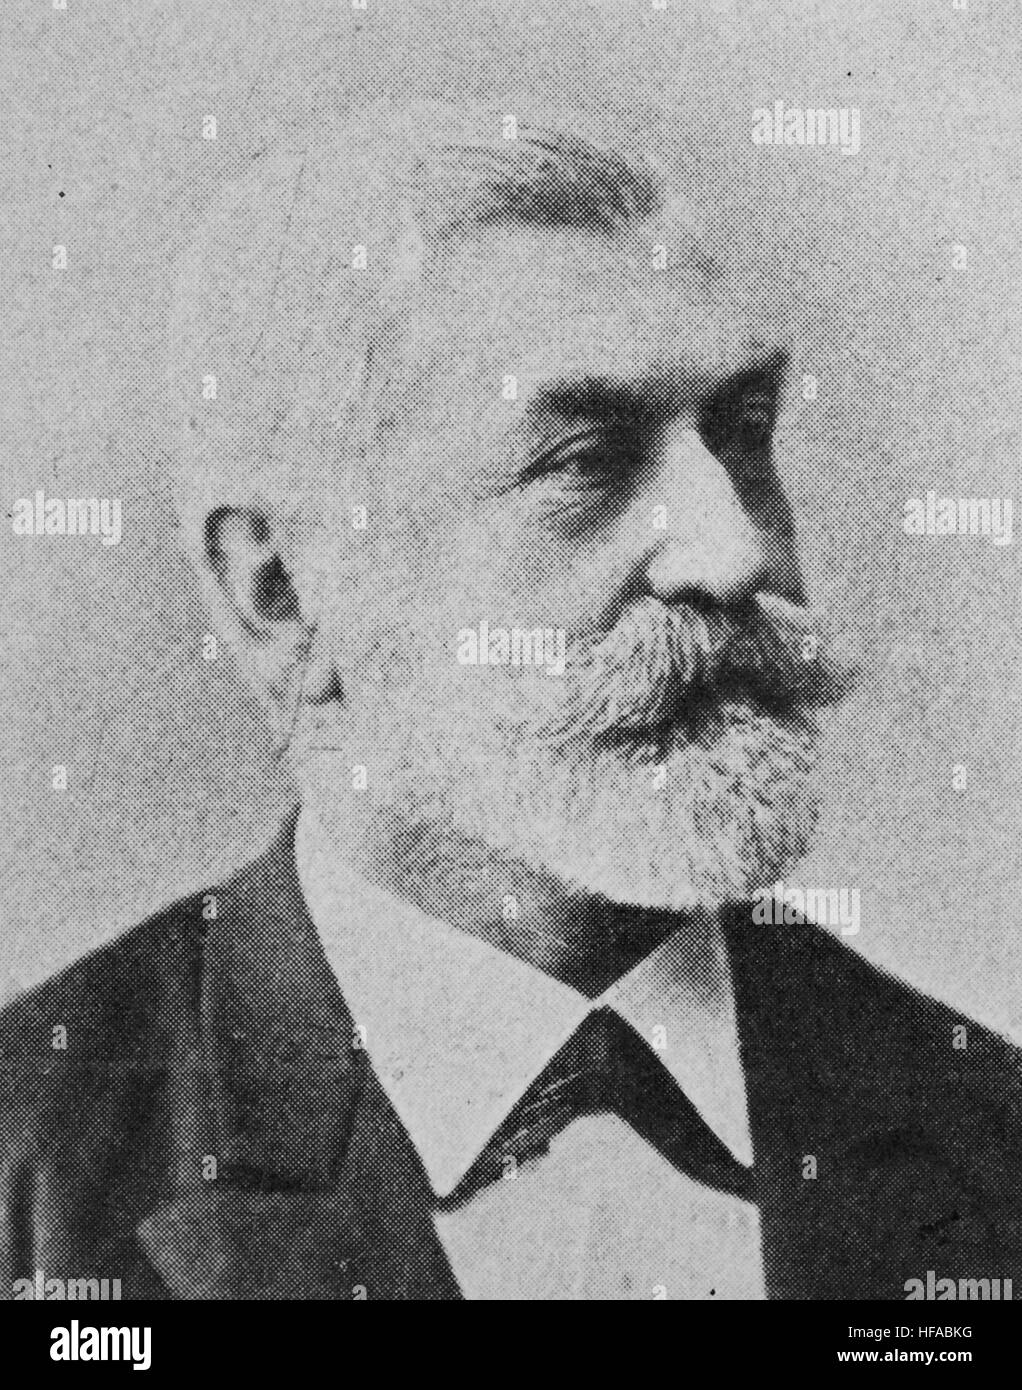 Gustav Ritter von Ebermeyer, geboren 1842, deutscher Politiker, Eisenbahn-Regisseur und Autor, Reproduktion Foto aus dem Jahr 1895, digital verbessert Stockfoto